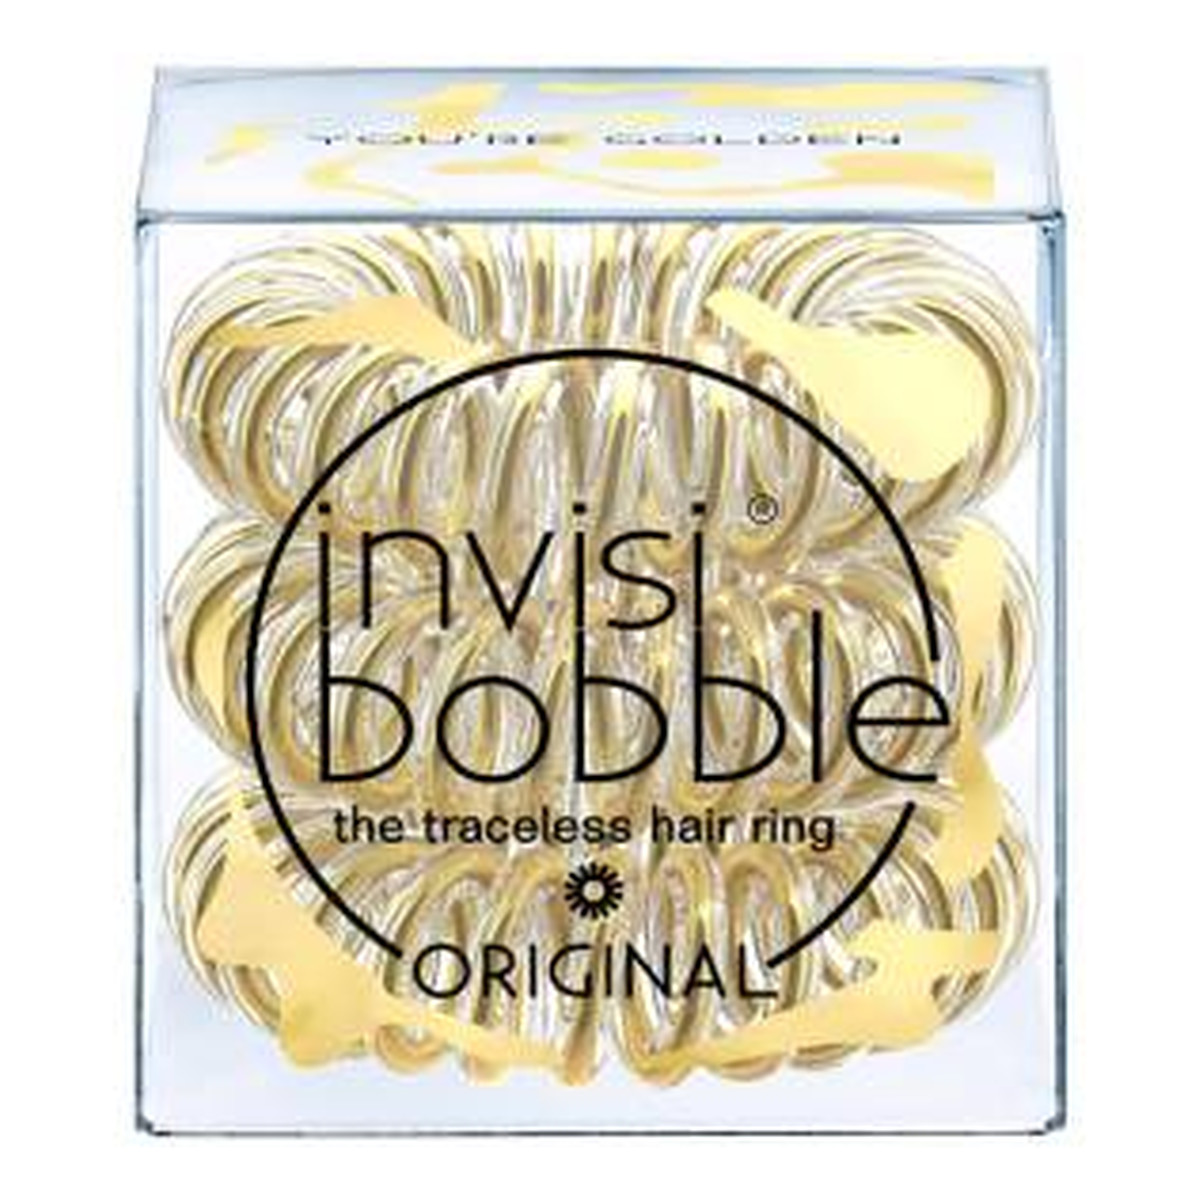 Invisibobble Original You're Golden 3 gumki do włosów przezroczyste złote